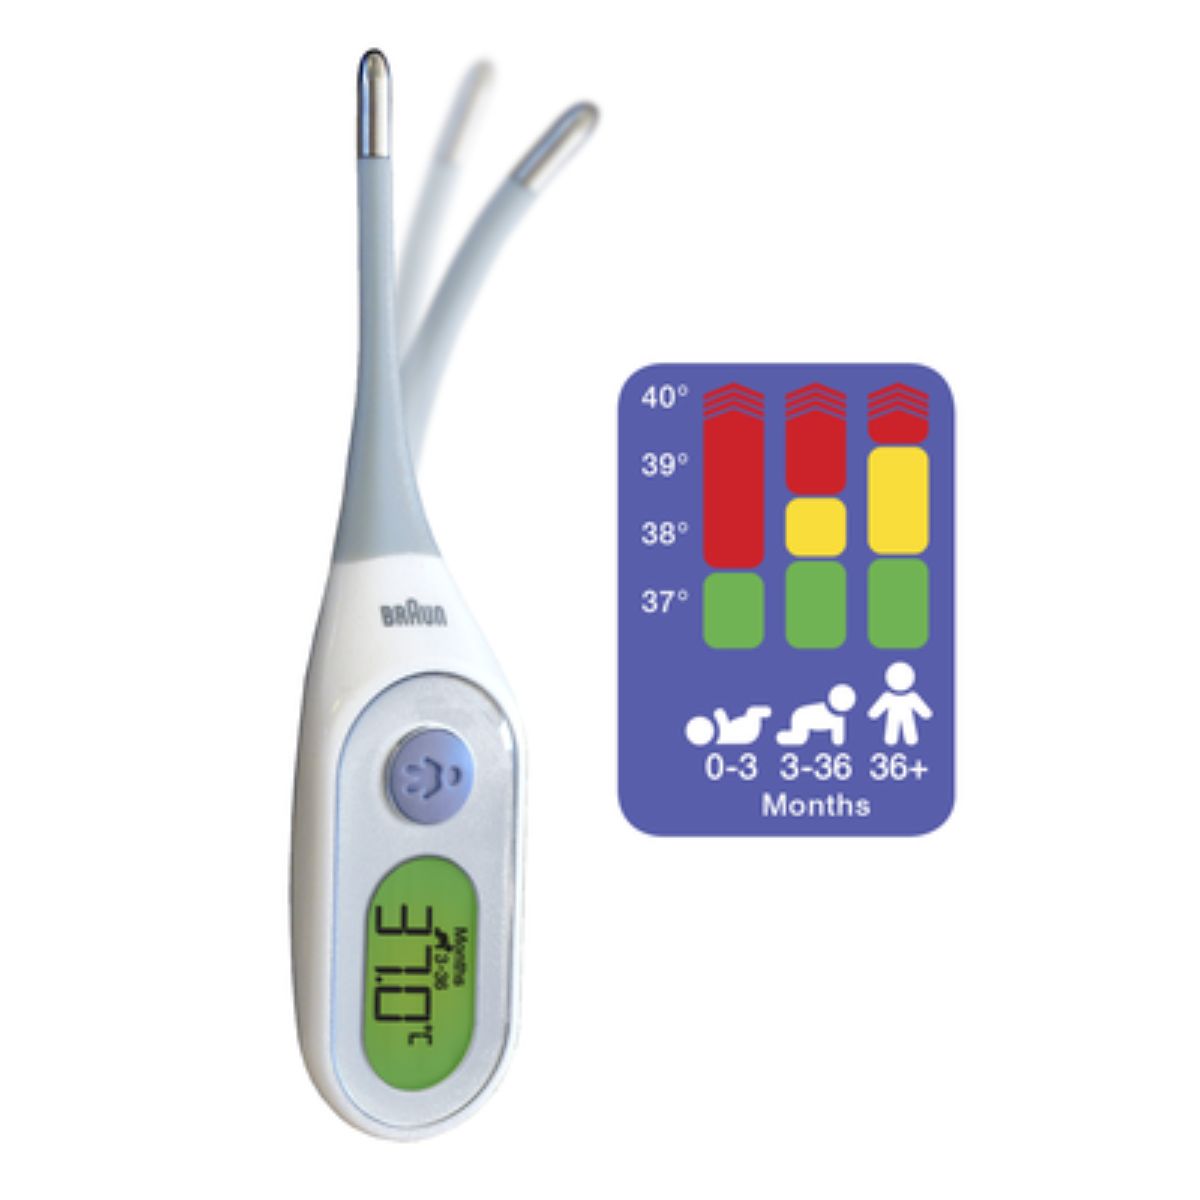 Bij een verhoging is het altijd verstandig om temperatuur op te meten. De Braun digitale thermometer PRT 2000 is een handige digitale thermometer met leeftijdsafhankelijke koortsindicator. VanZus